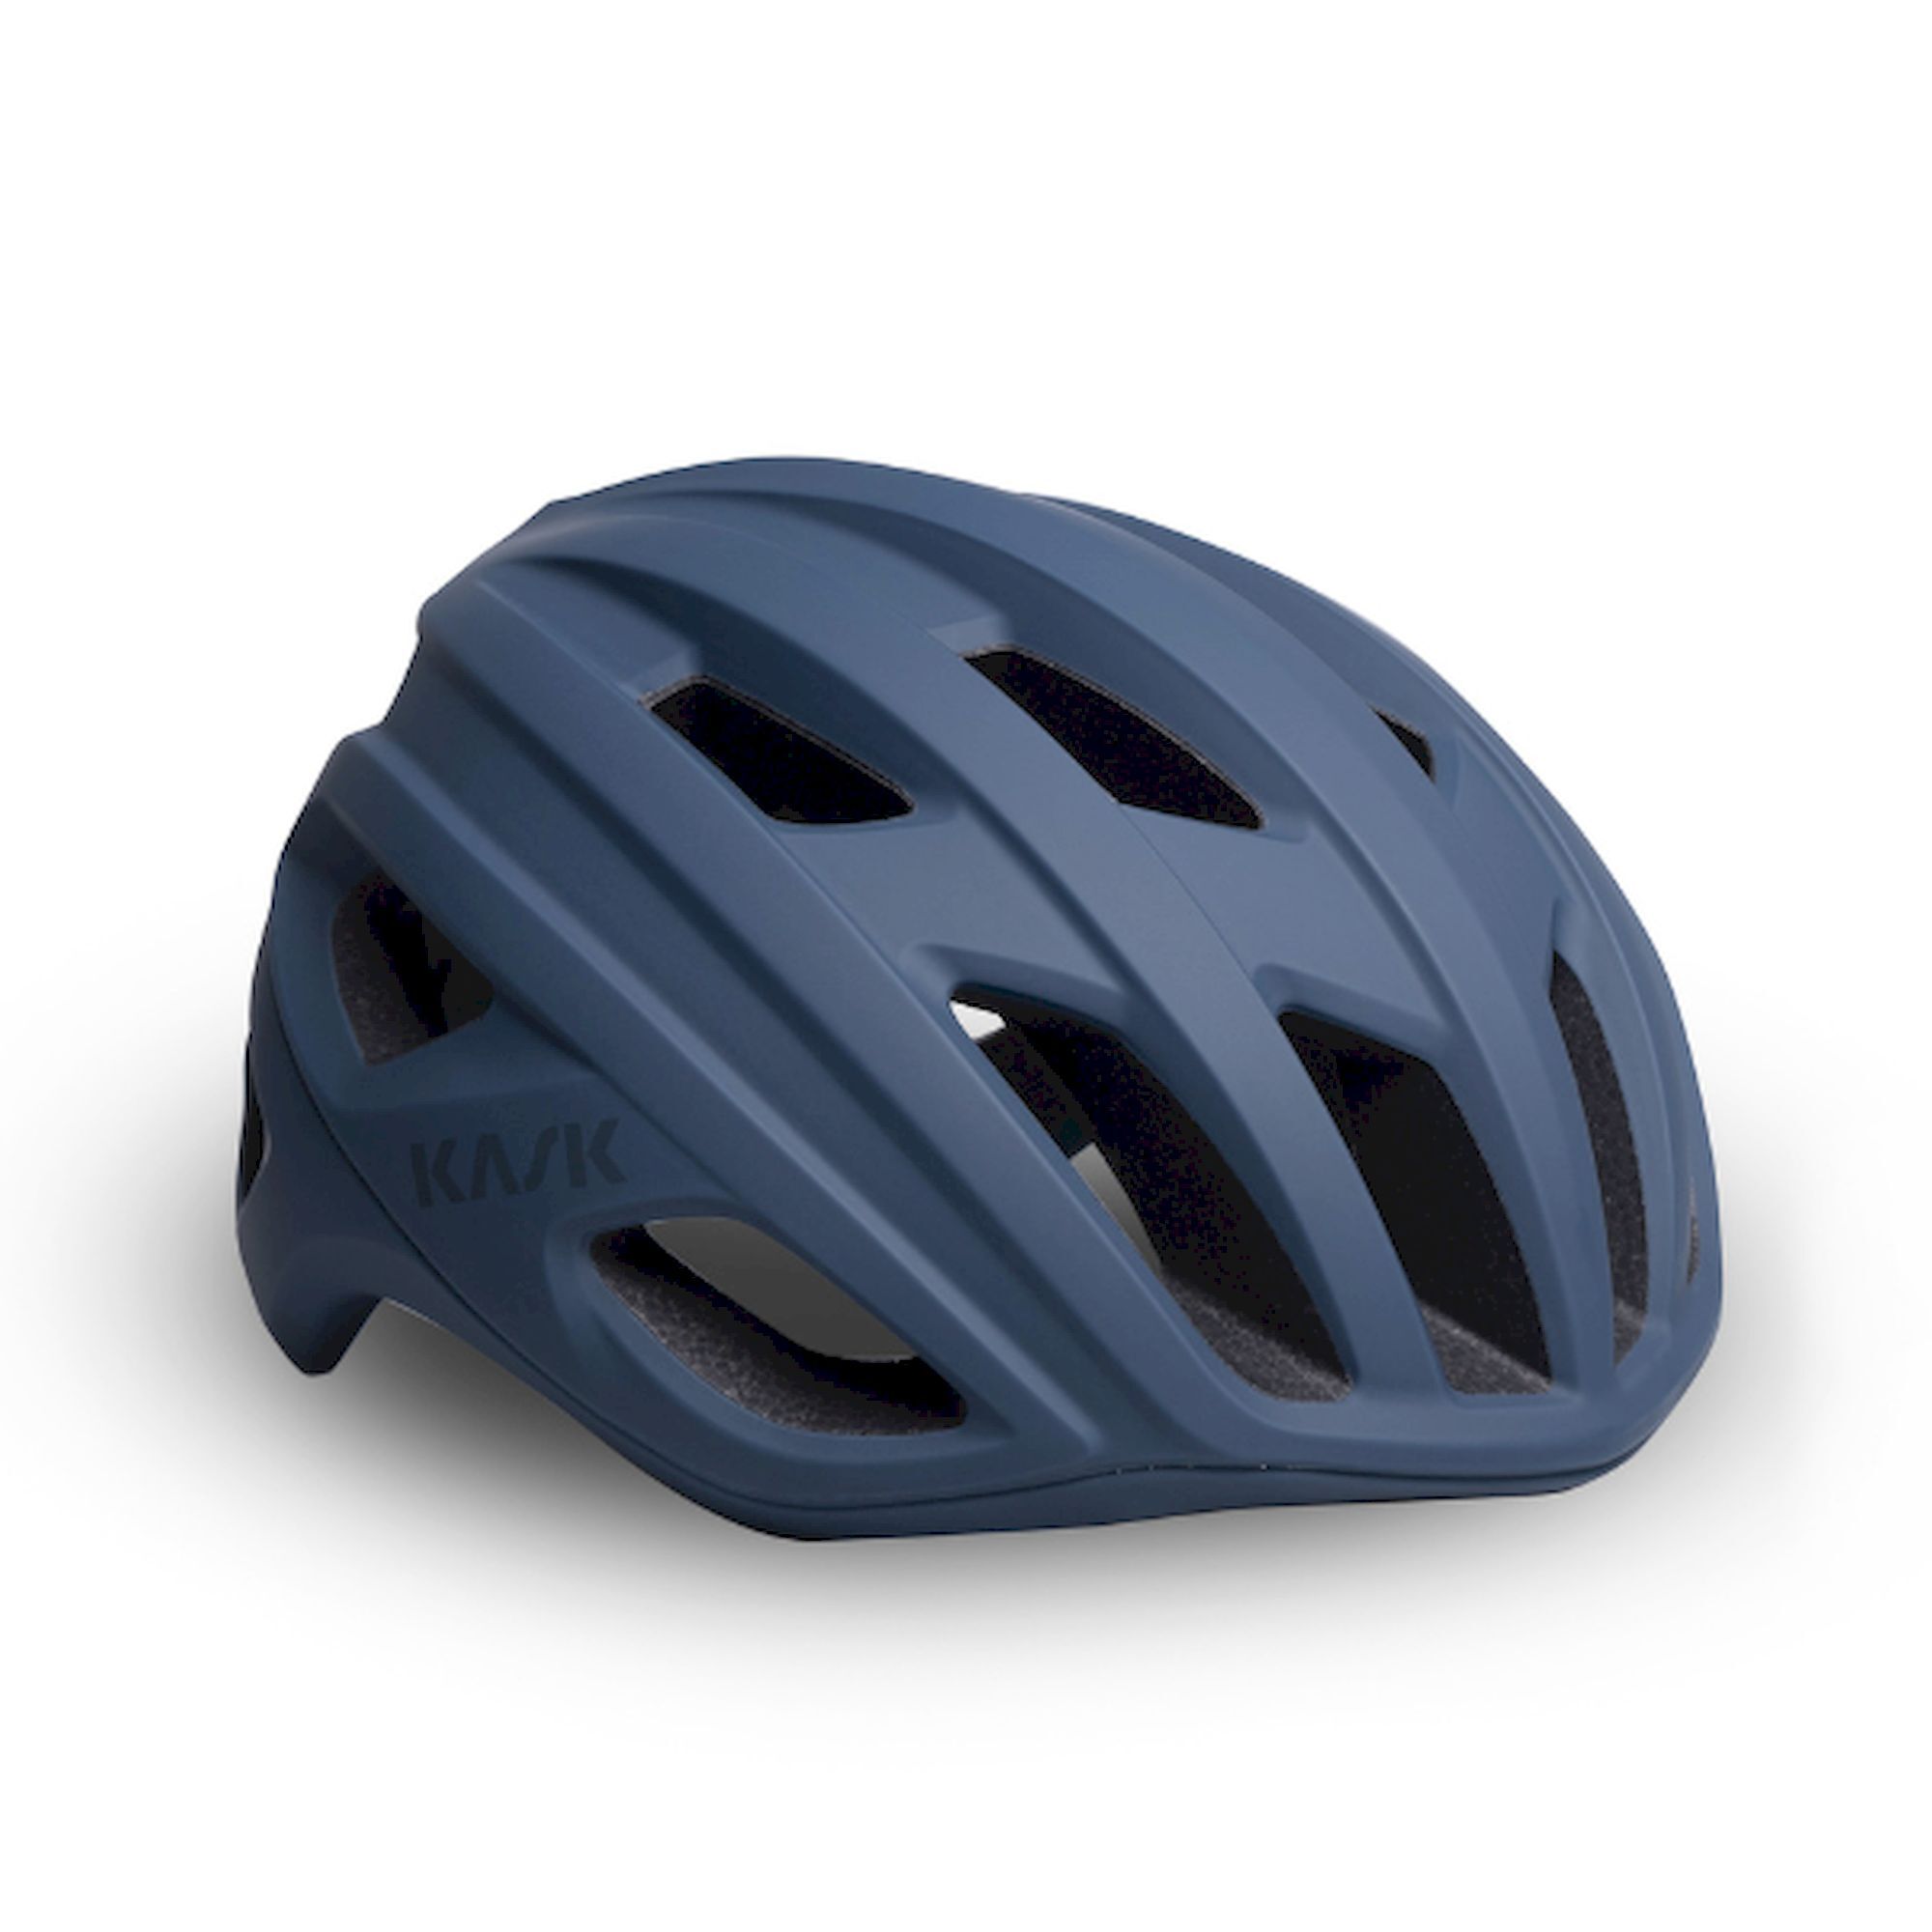 KASK Mojito3 - Road bike helmet